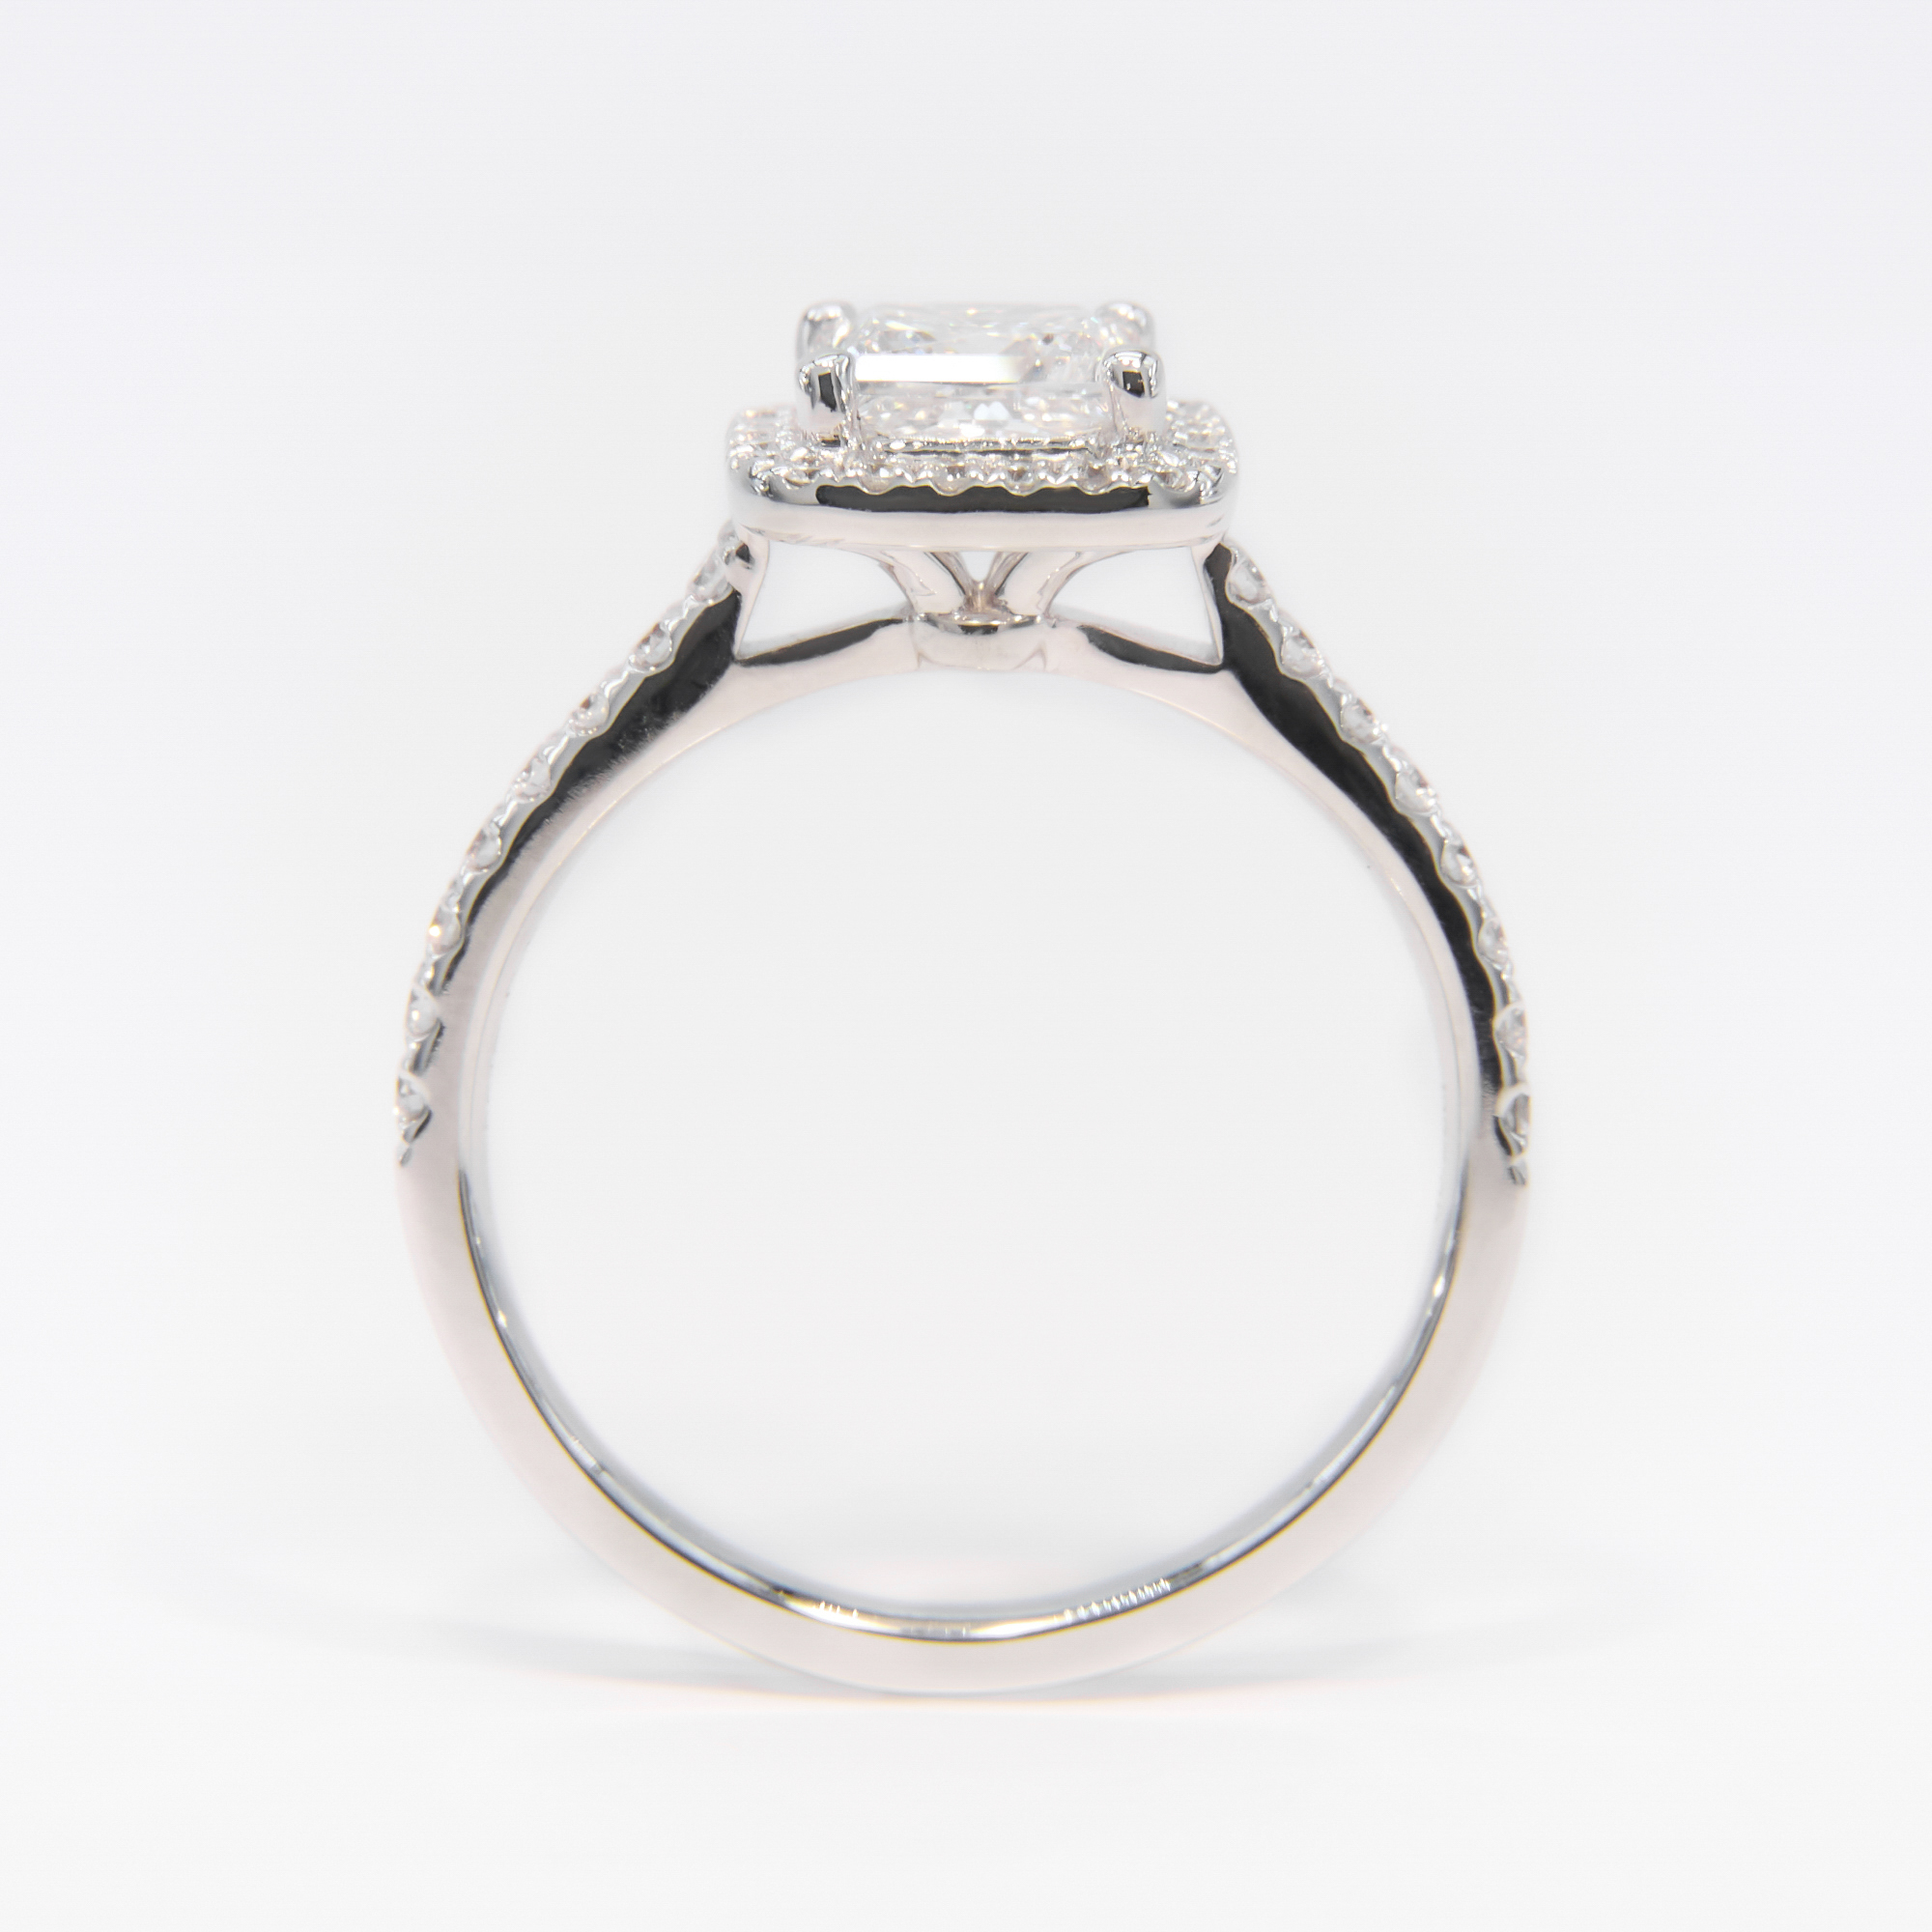 IGI Certified 18K White Gold Princess Lab Grown Diamond Halo Engagement Ring